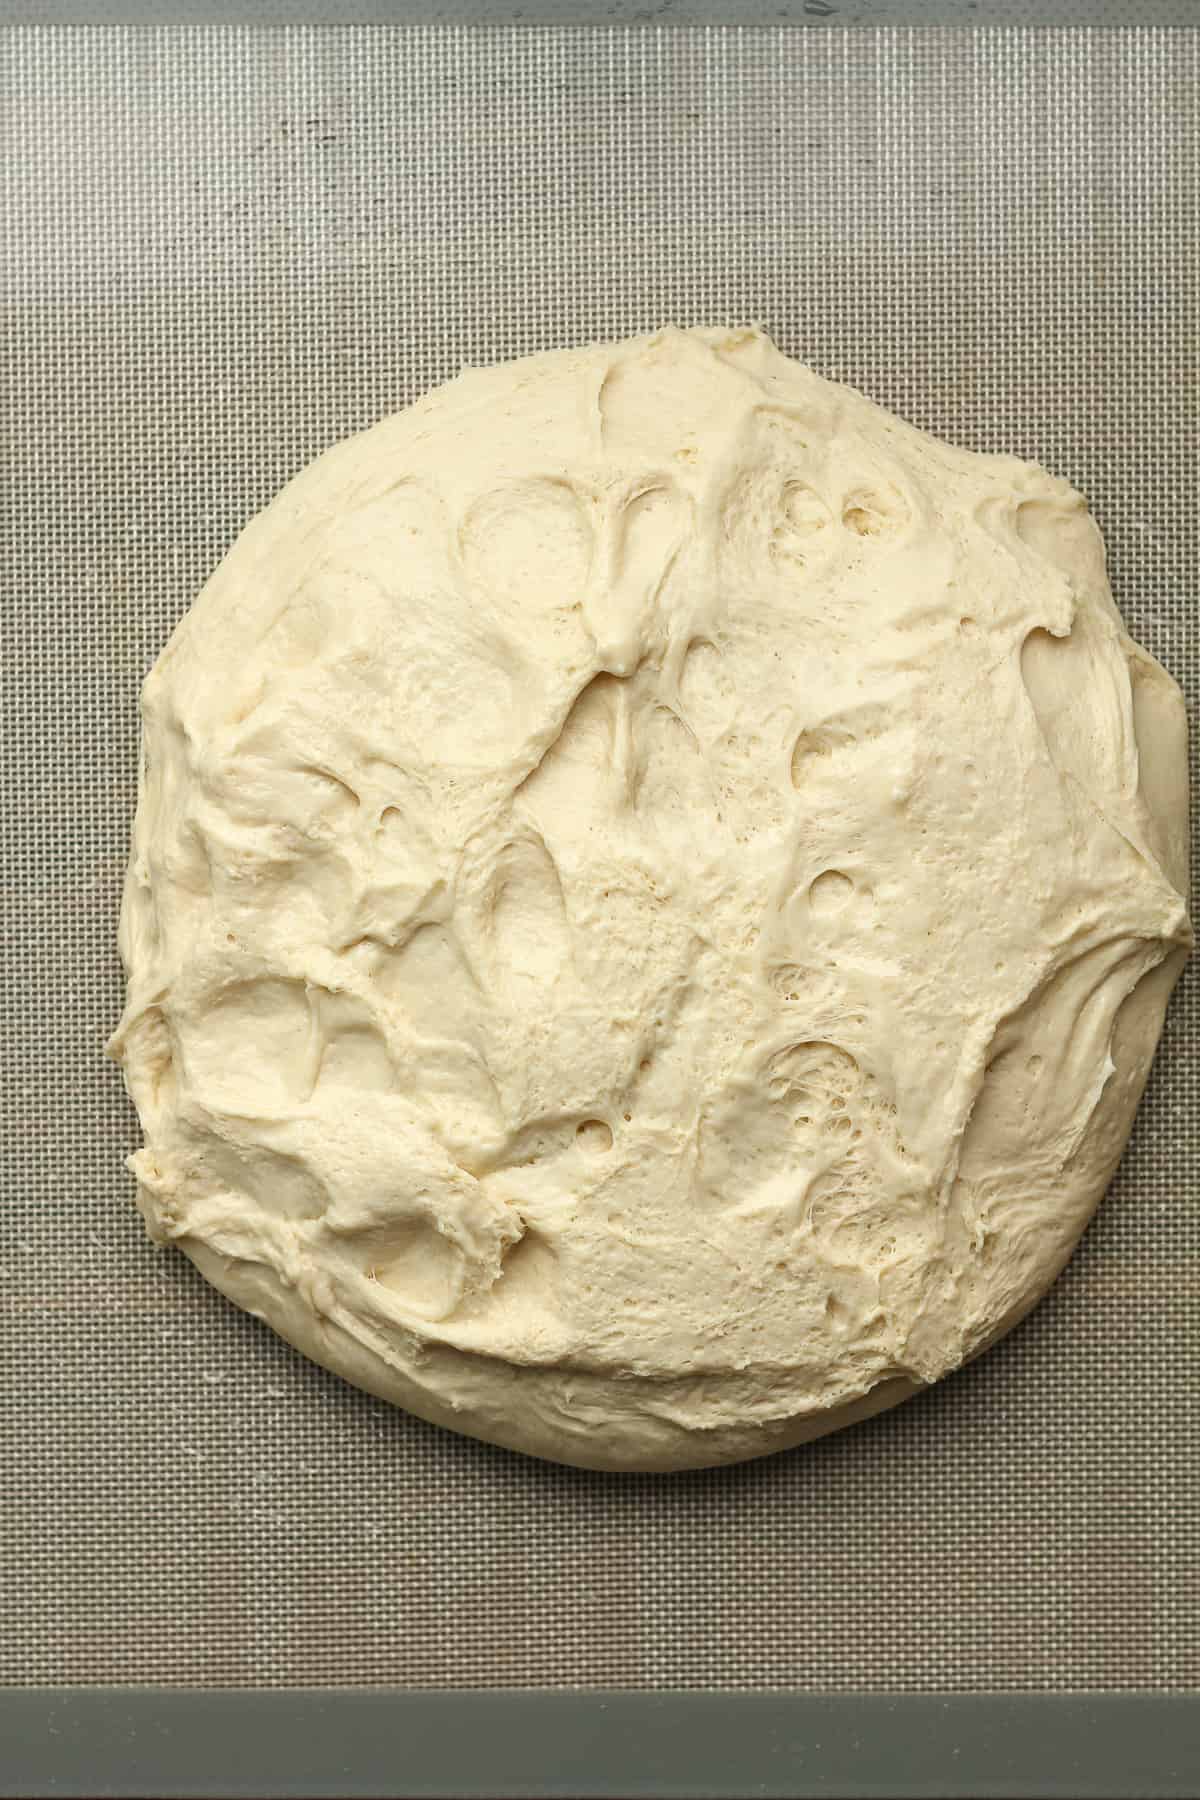 A round of pretzel roll dough on a baking mat.